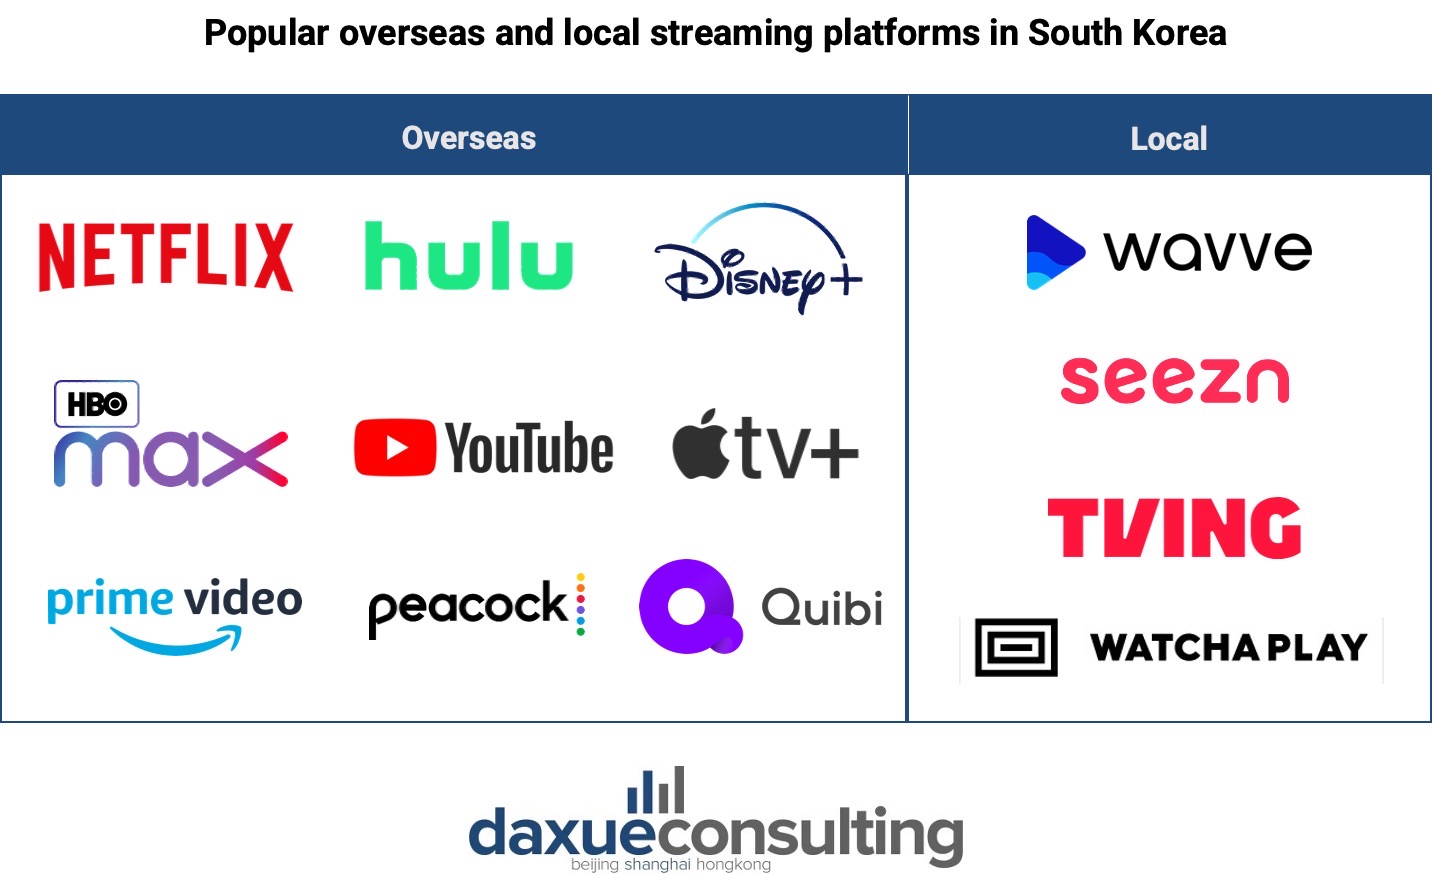 Streaming platforms in South Korea